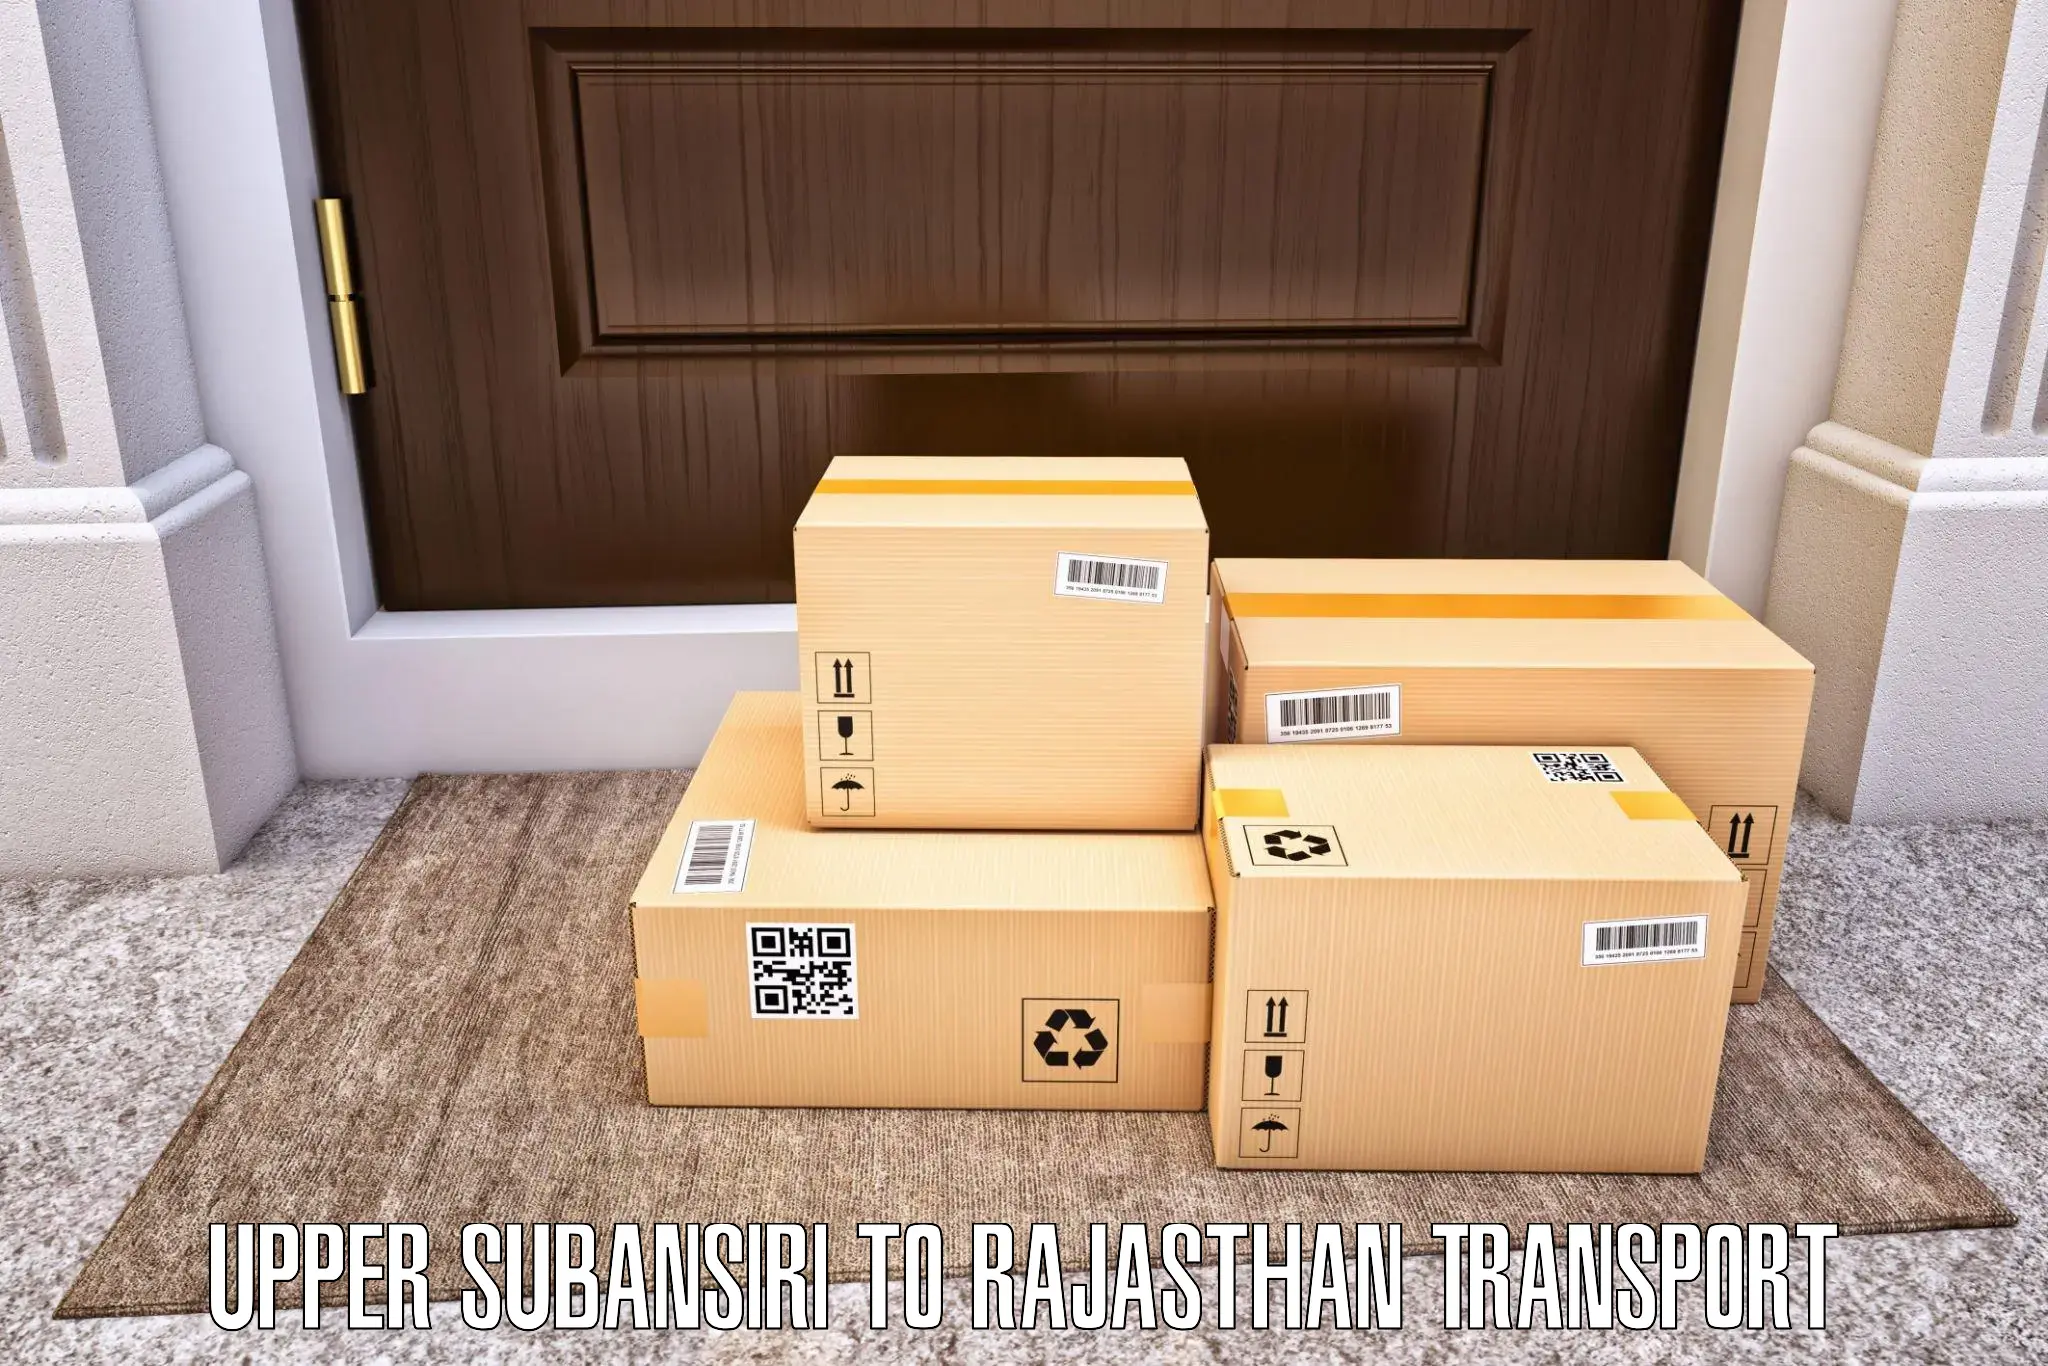 Transport in sharing Upper Subansiri to Parbatsar